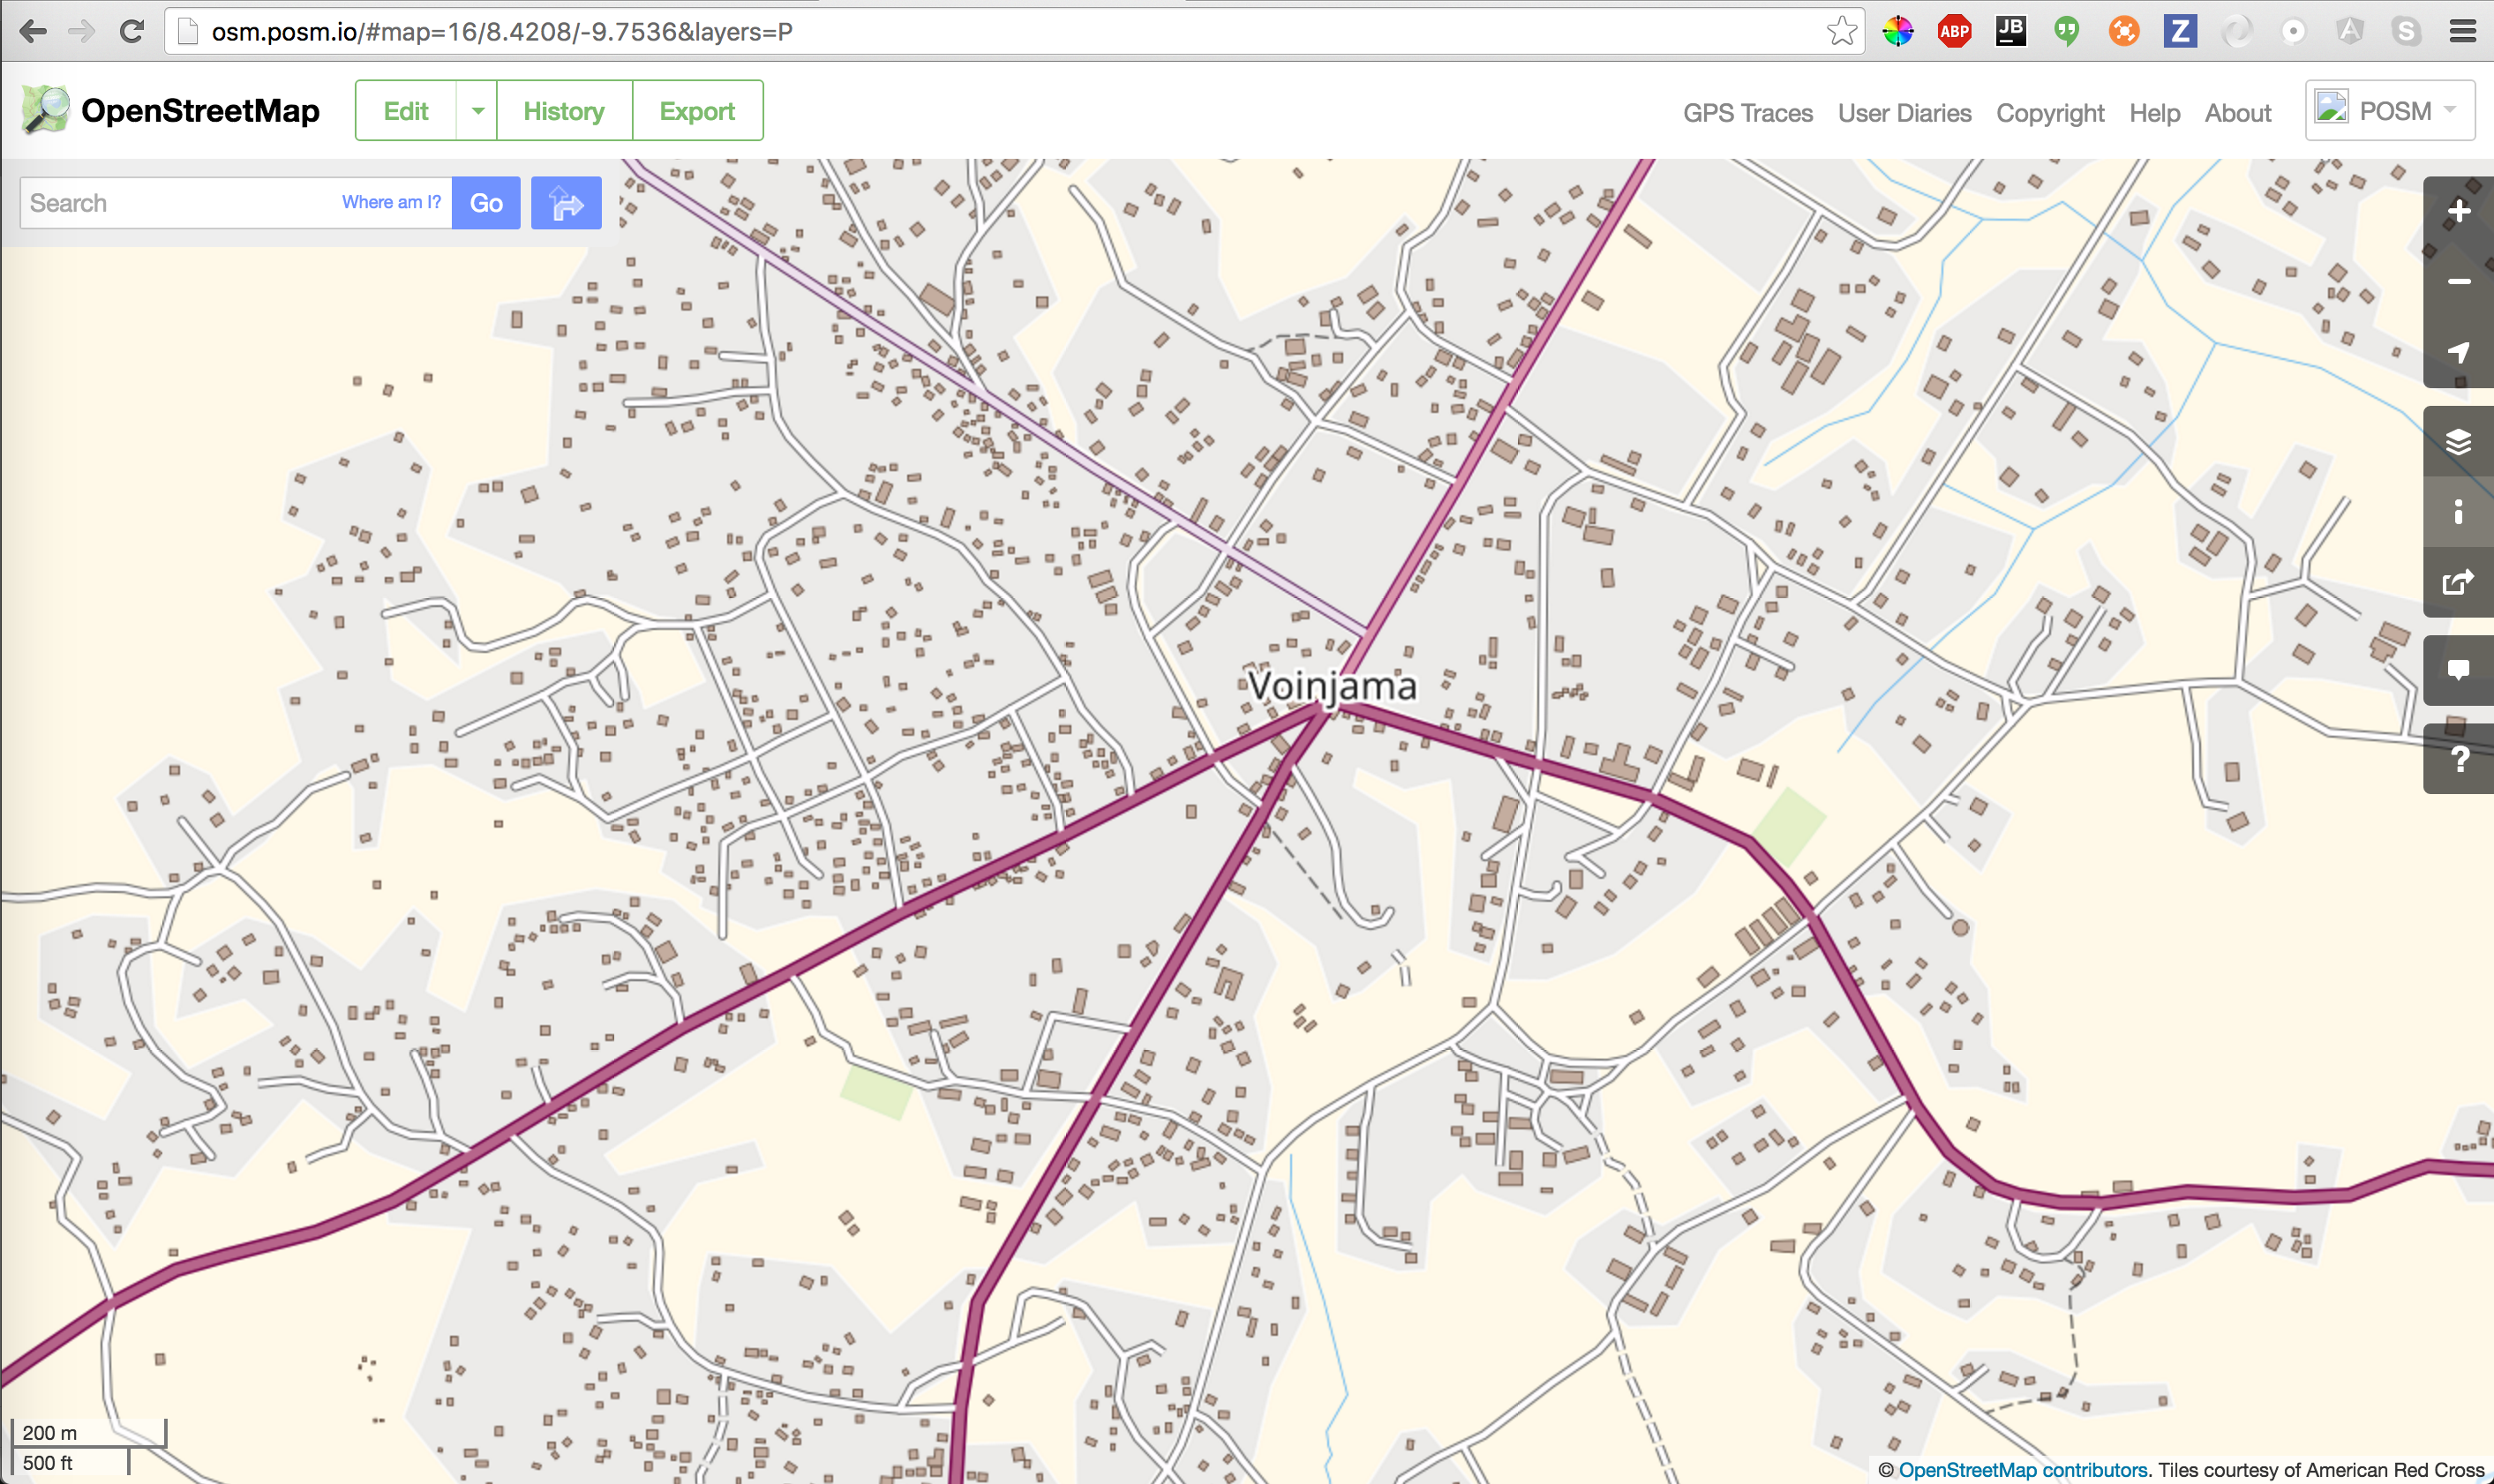 Tiles in OpenStreetMap